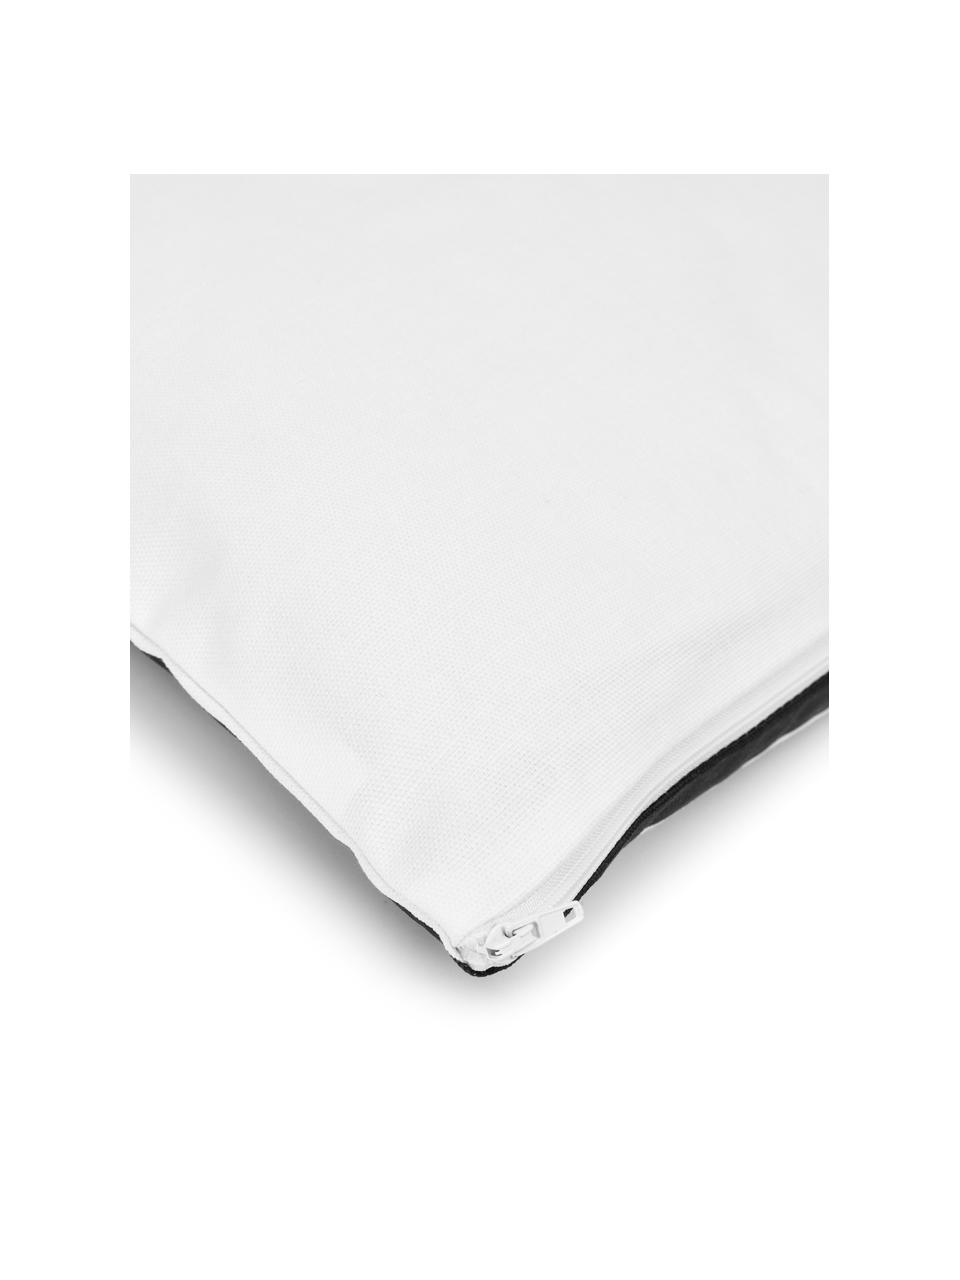 Kissenhülle Zahra in Schwarz/Weiß mit grafischem Muster, 100% Baumwolle, Weiß, Schwarz, 45 x 45 cm